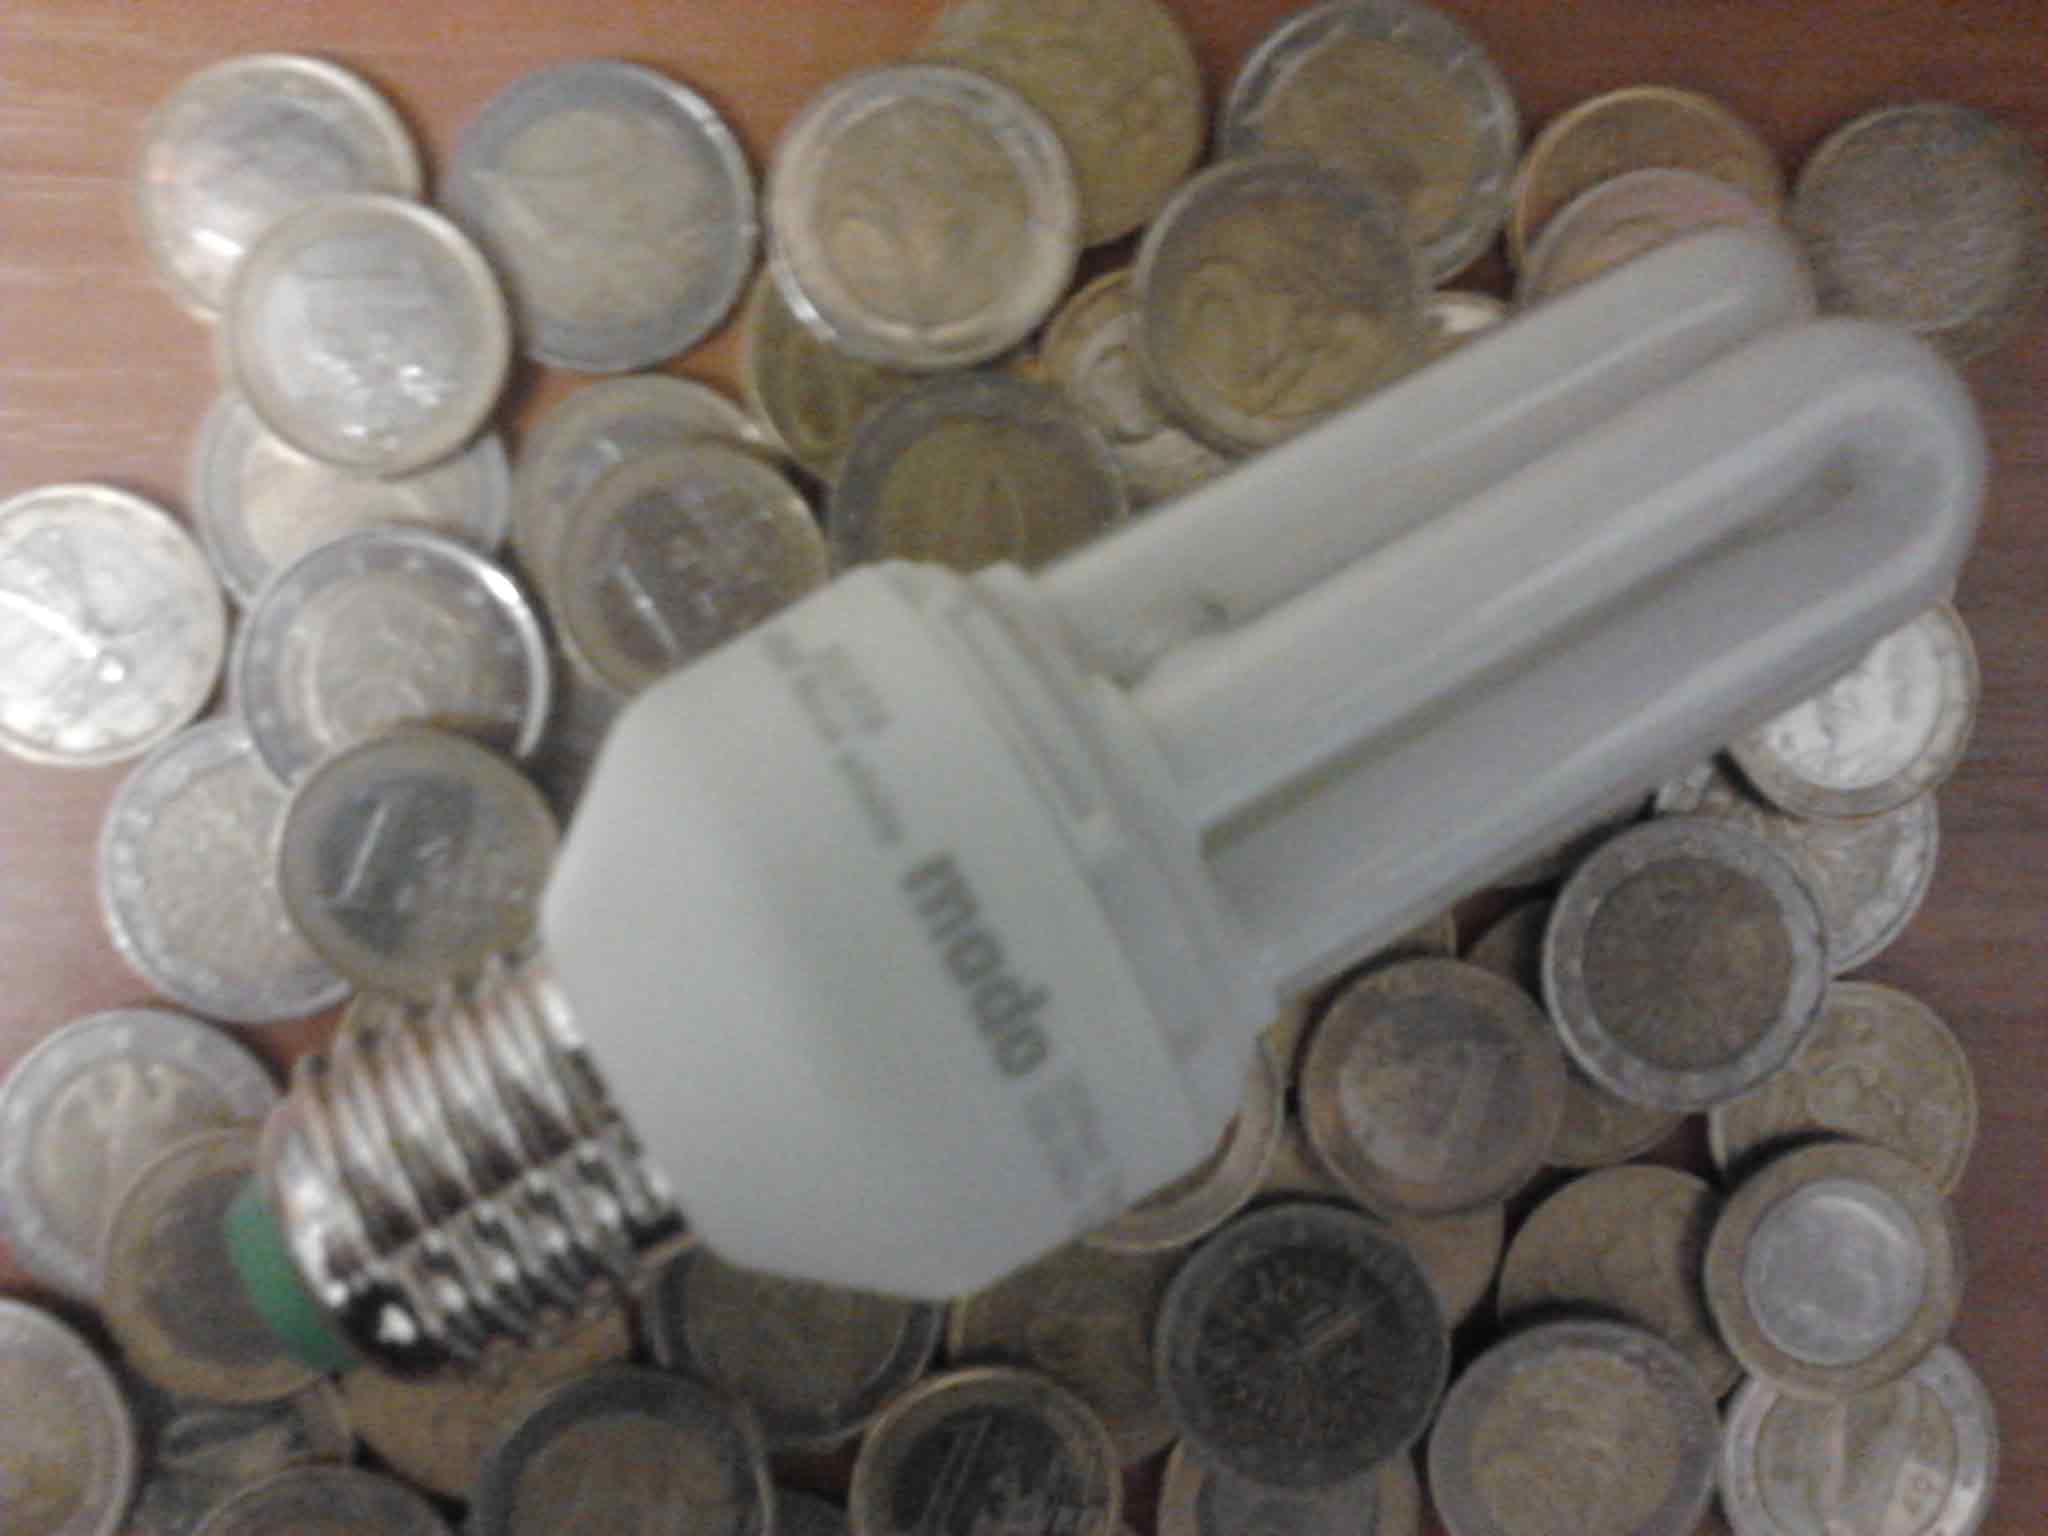 CFLs save money